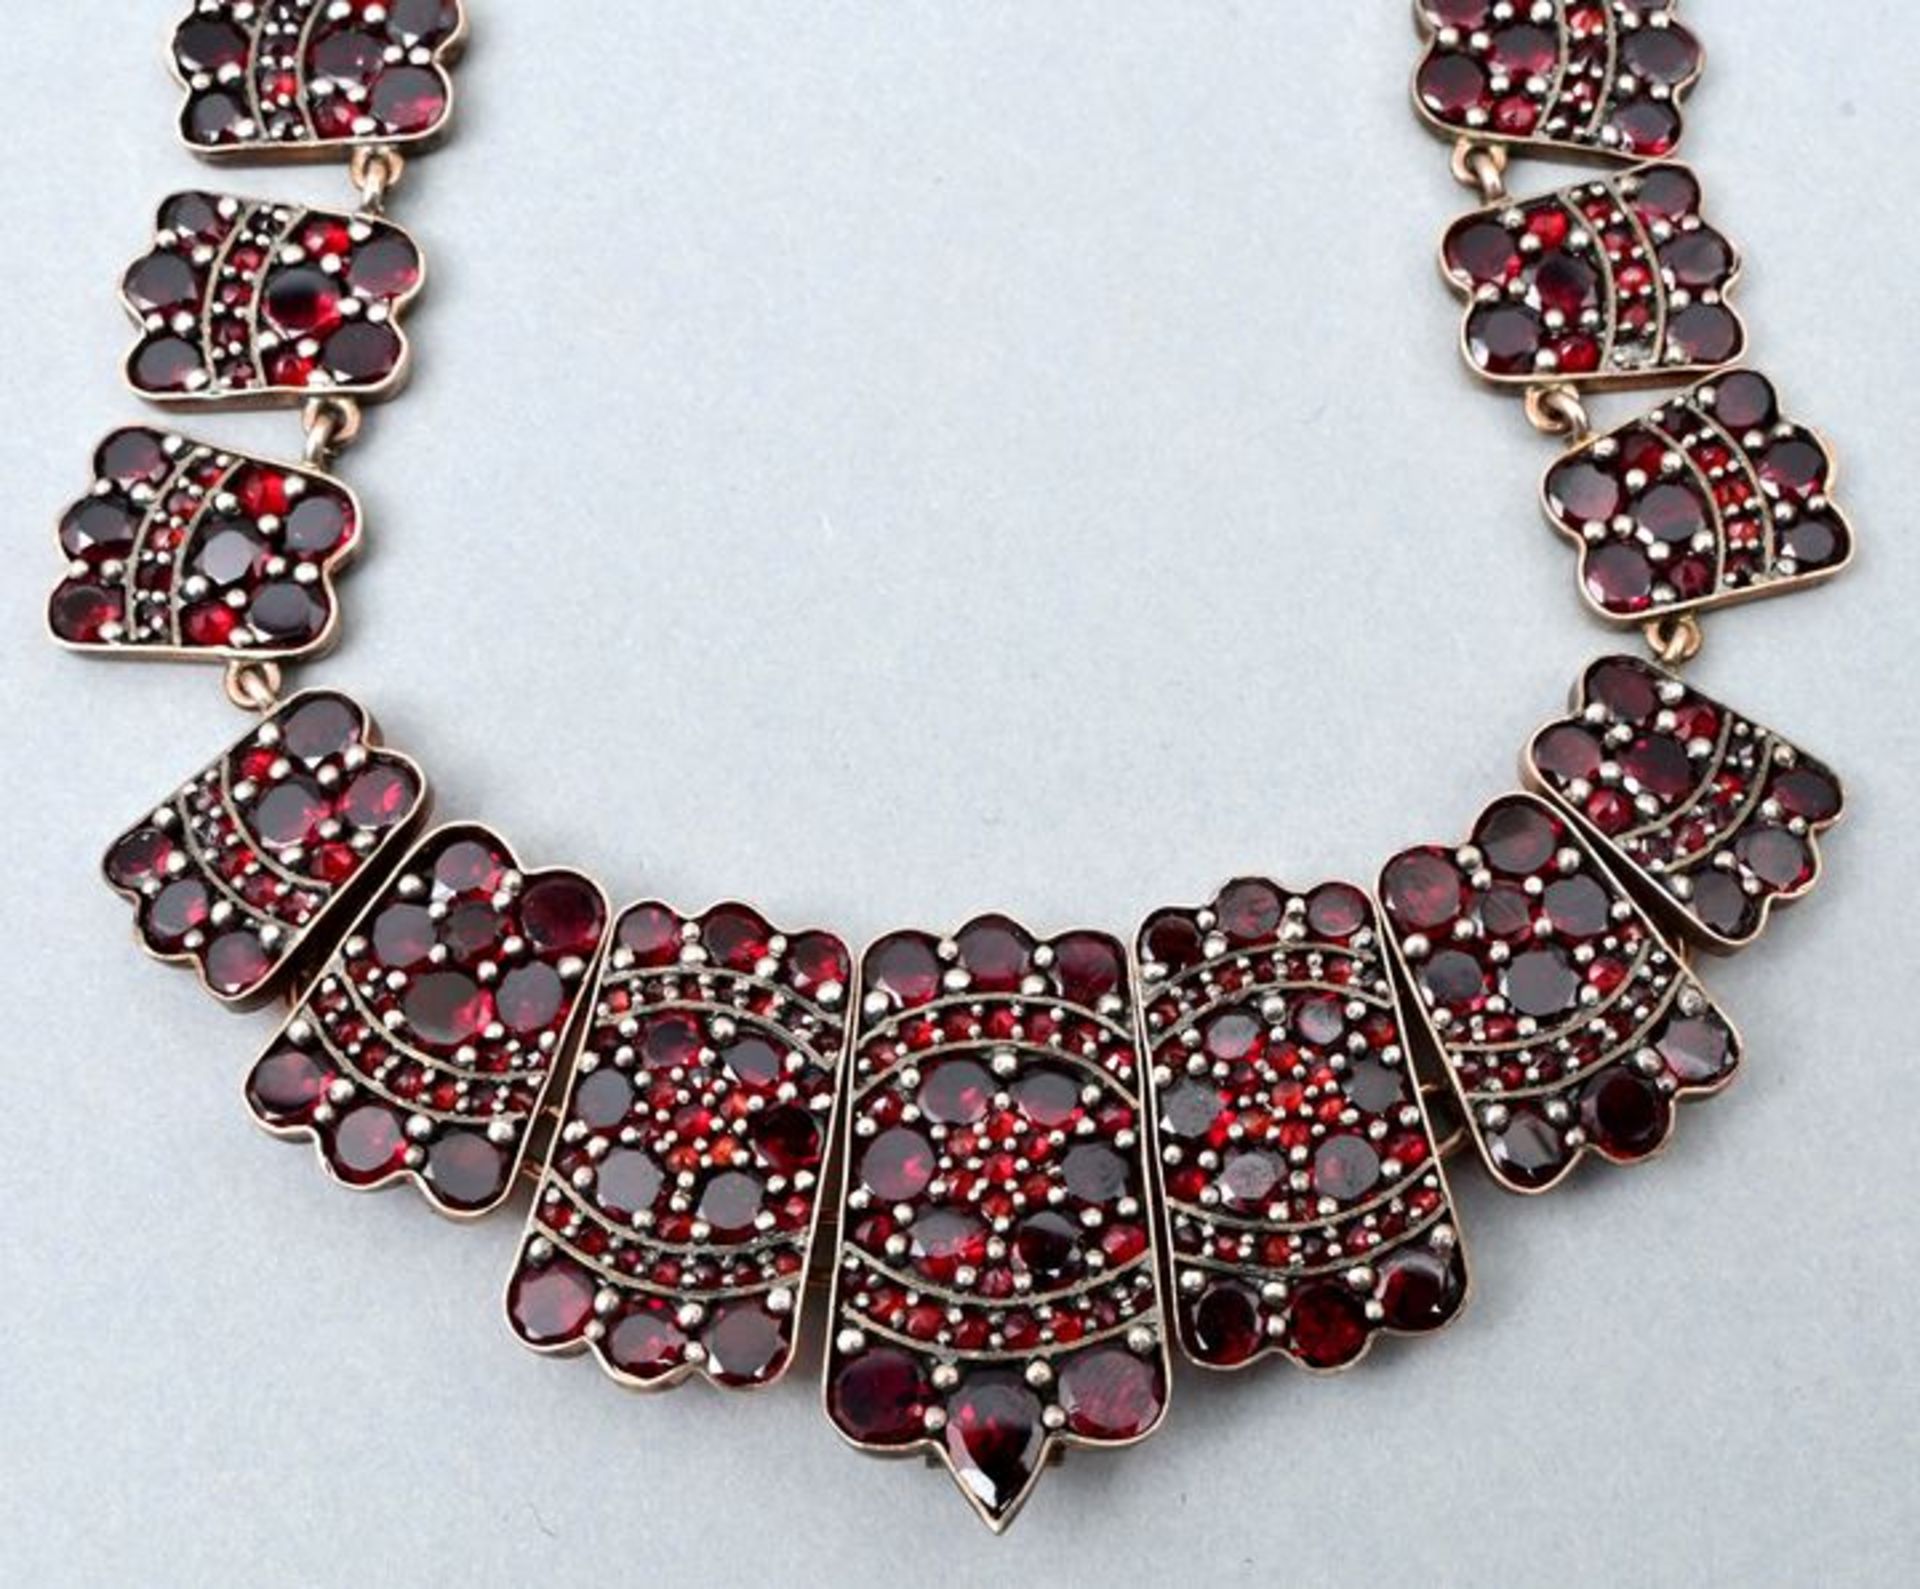 Halskette, Granat / Garnet necklace - Bild 2 aus 3